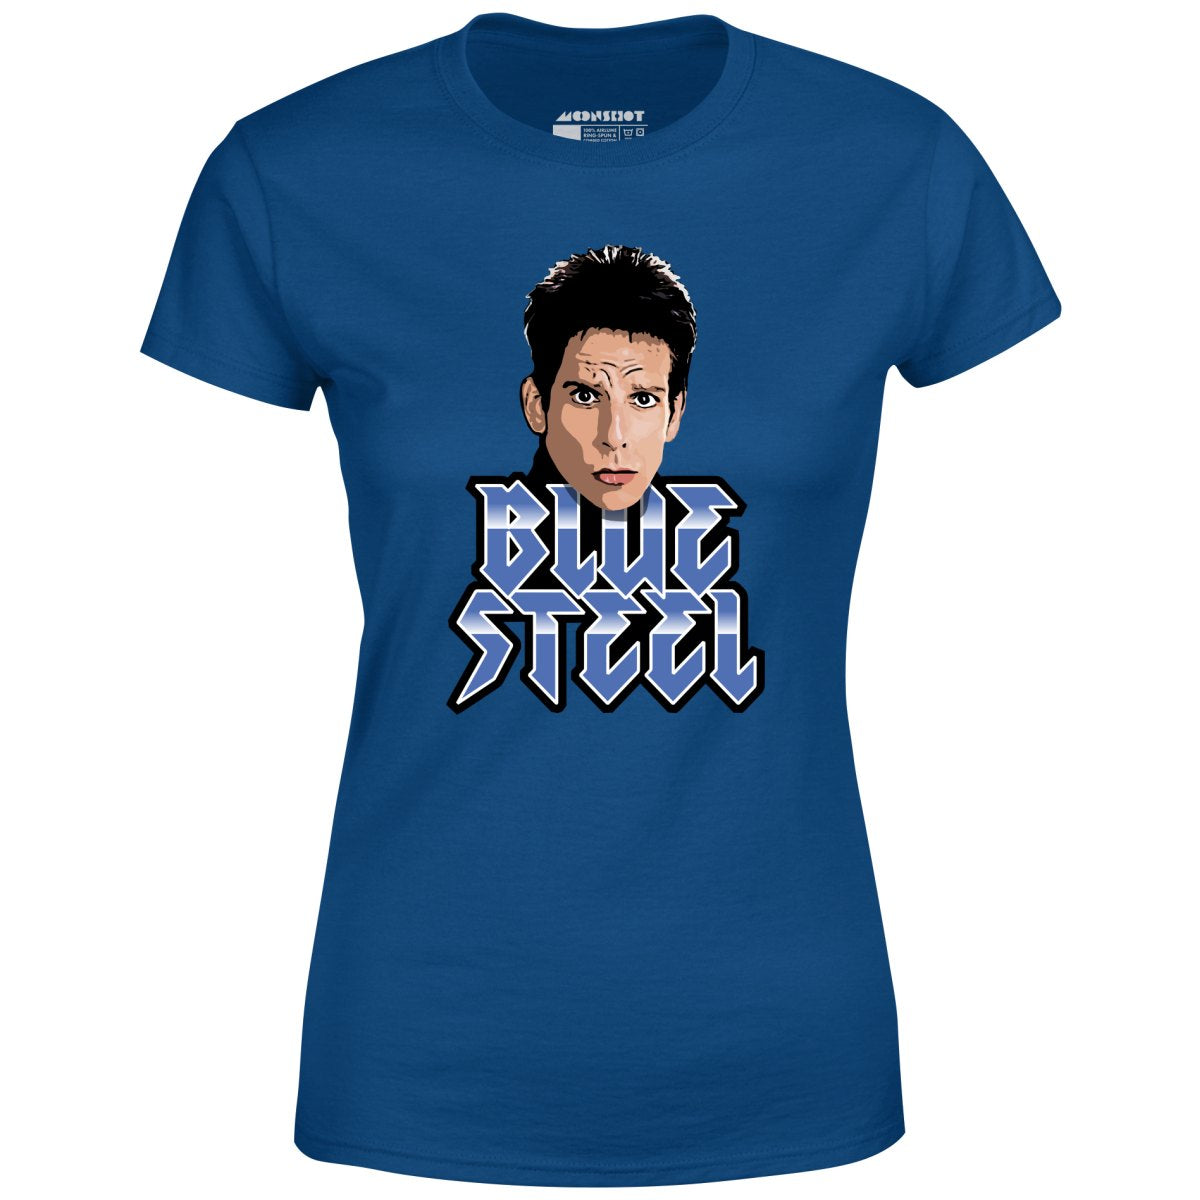 Blue Steel - Derek Zoolander - Women's T-Shirt